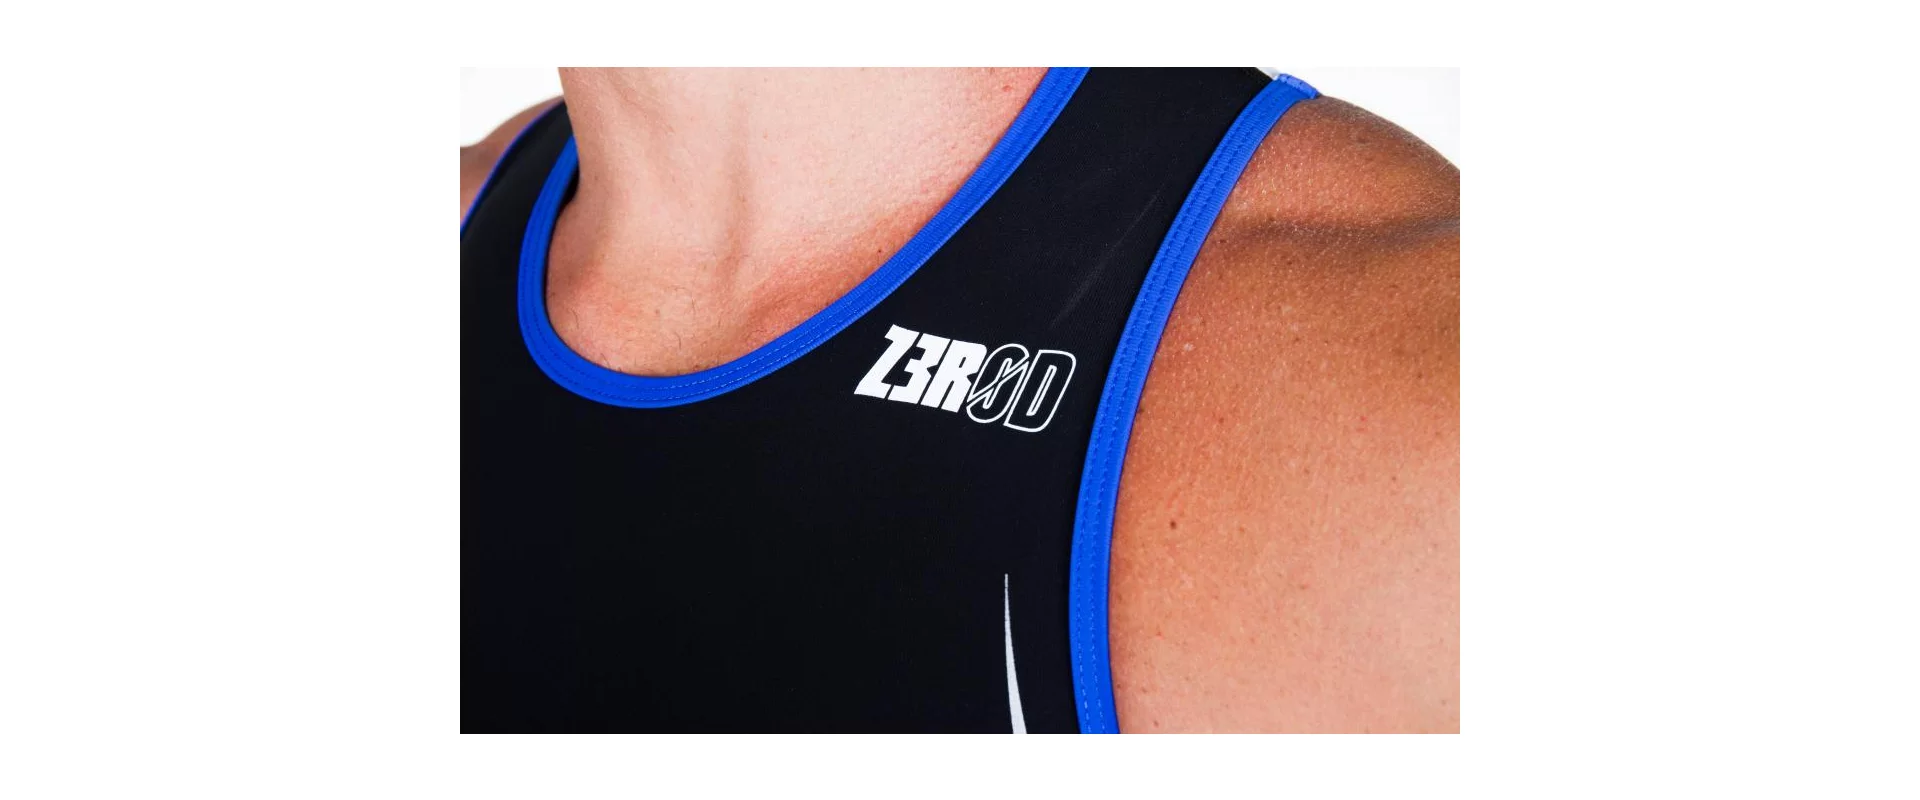 Z3R0D Racer Blue / Мужской стартовый костюм для триатлона без рукавов фото 6